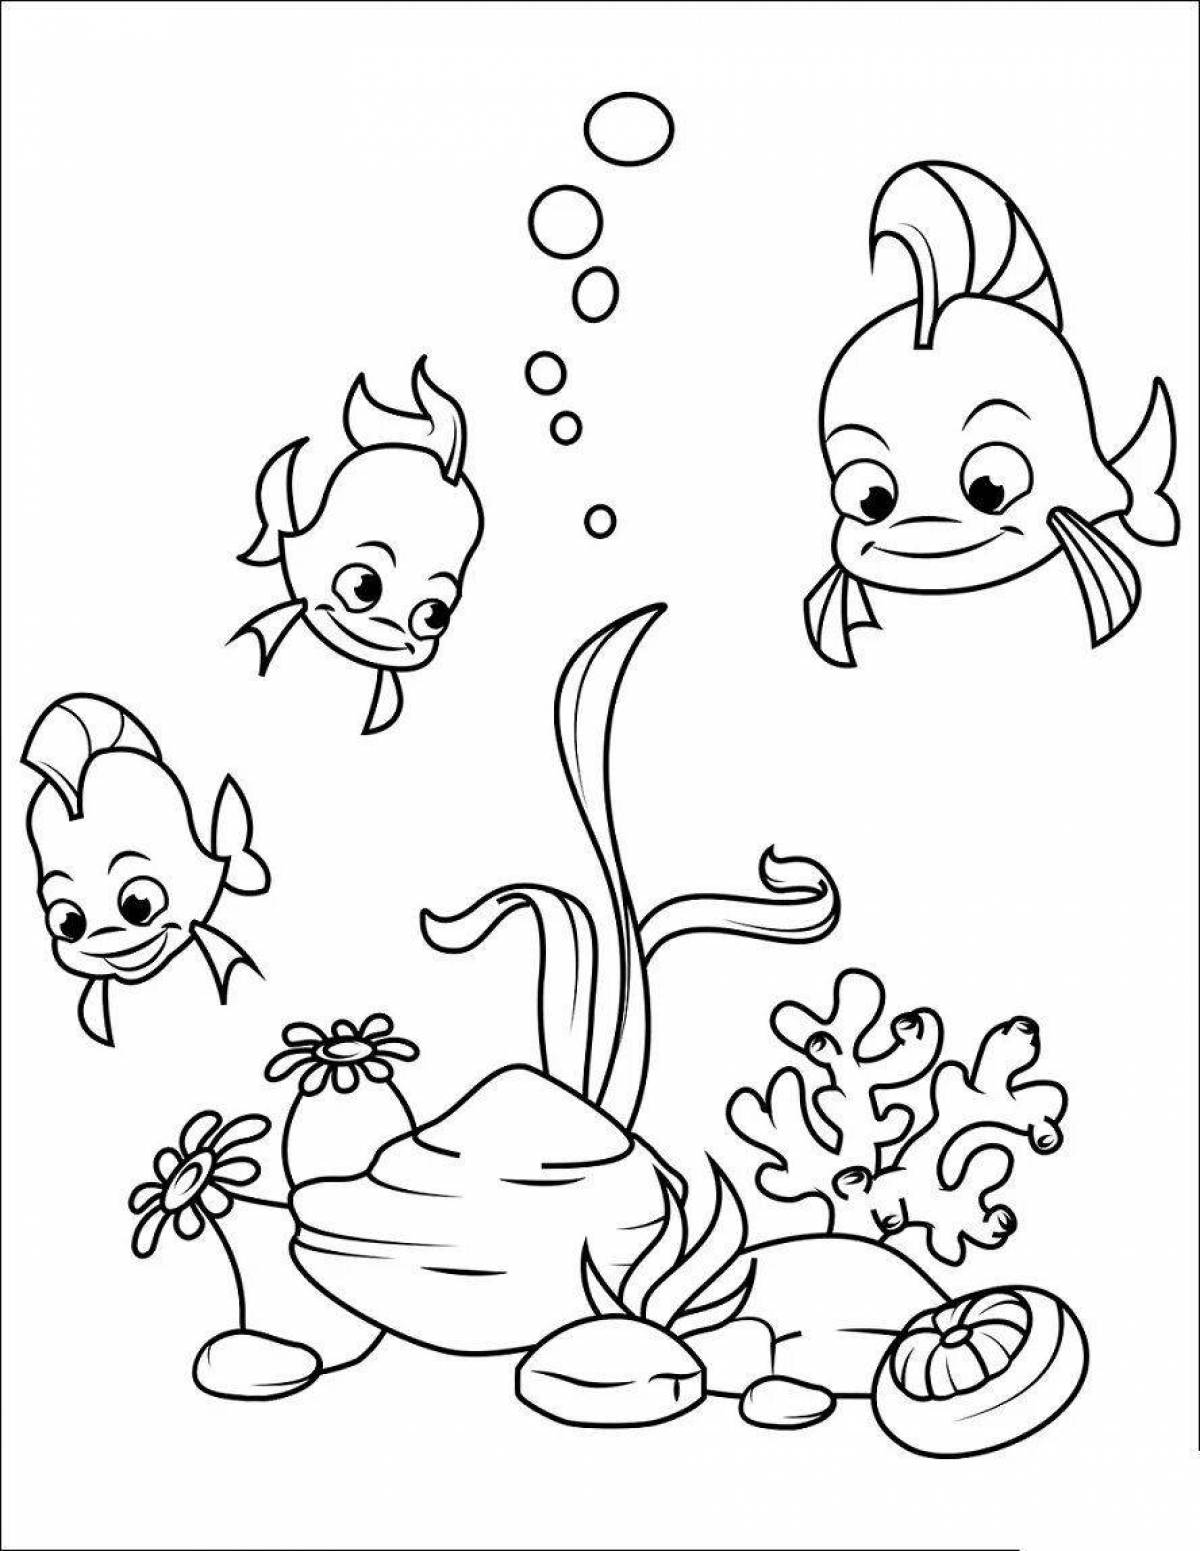 Радостная аквариумная рыбка-раскраска для детей 5-6 лет